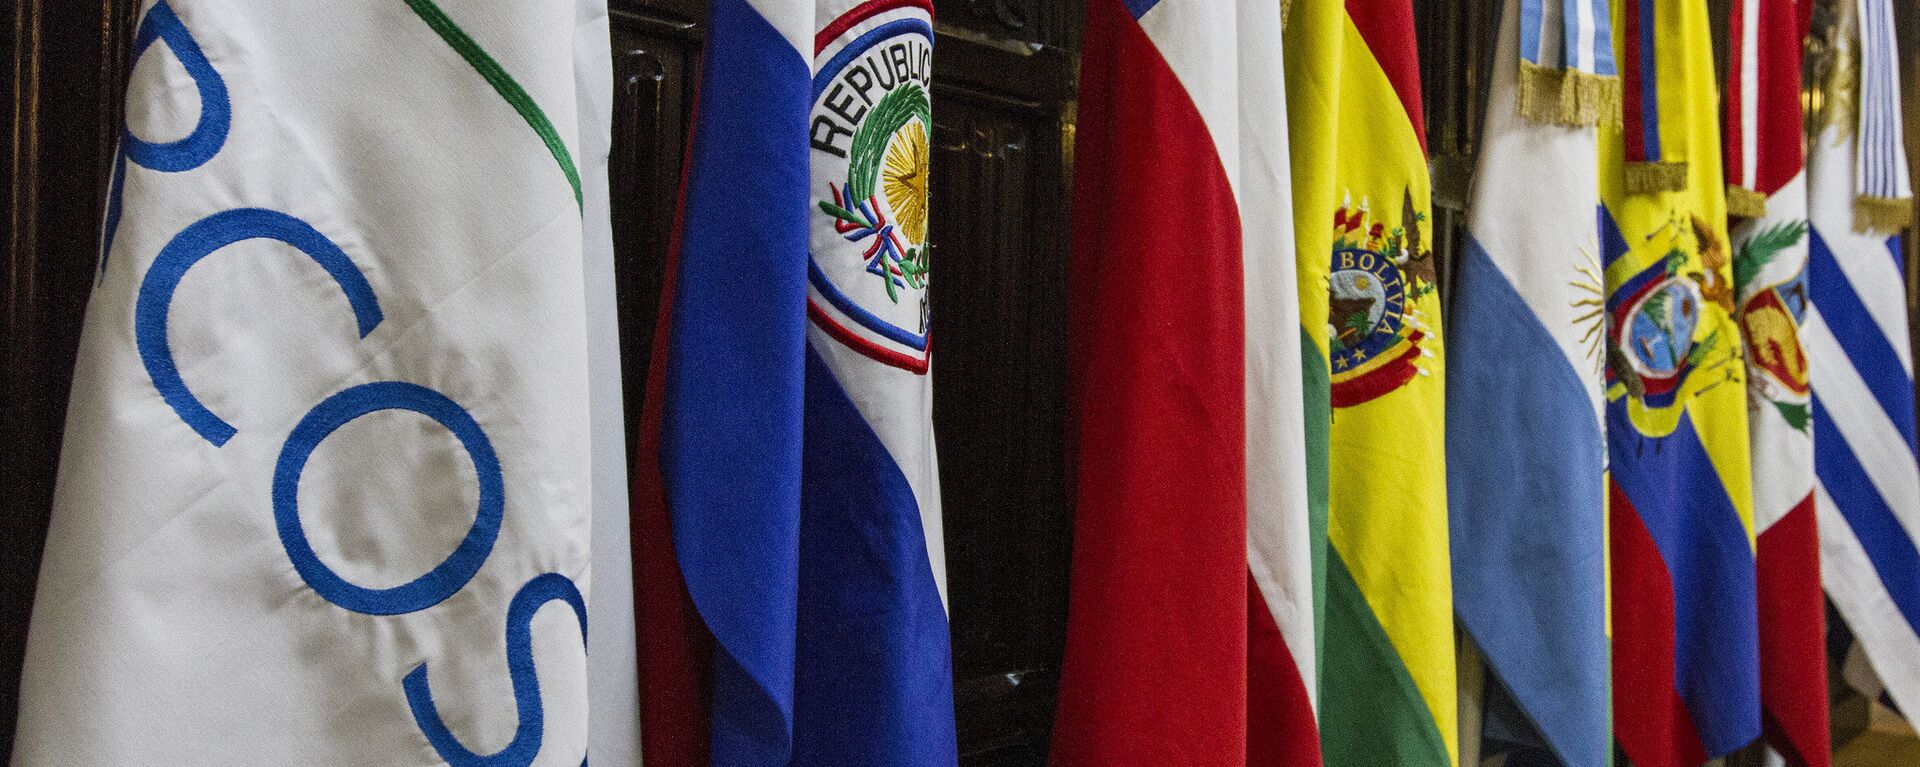 Banderas de los países miembros del Mercosur - Sputnik Mundo, 1920, 24.03.2021